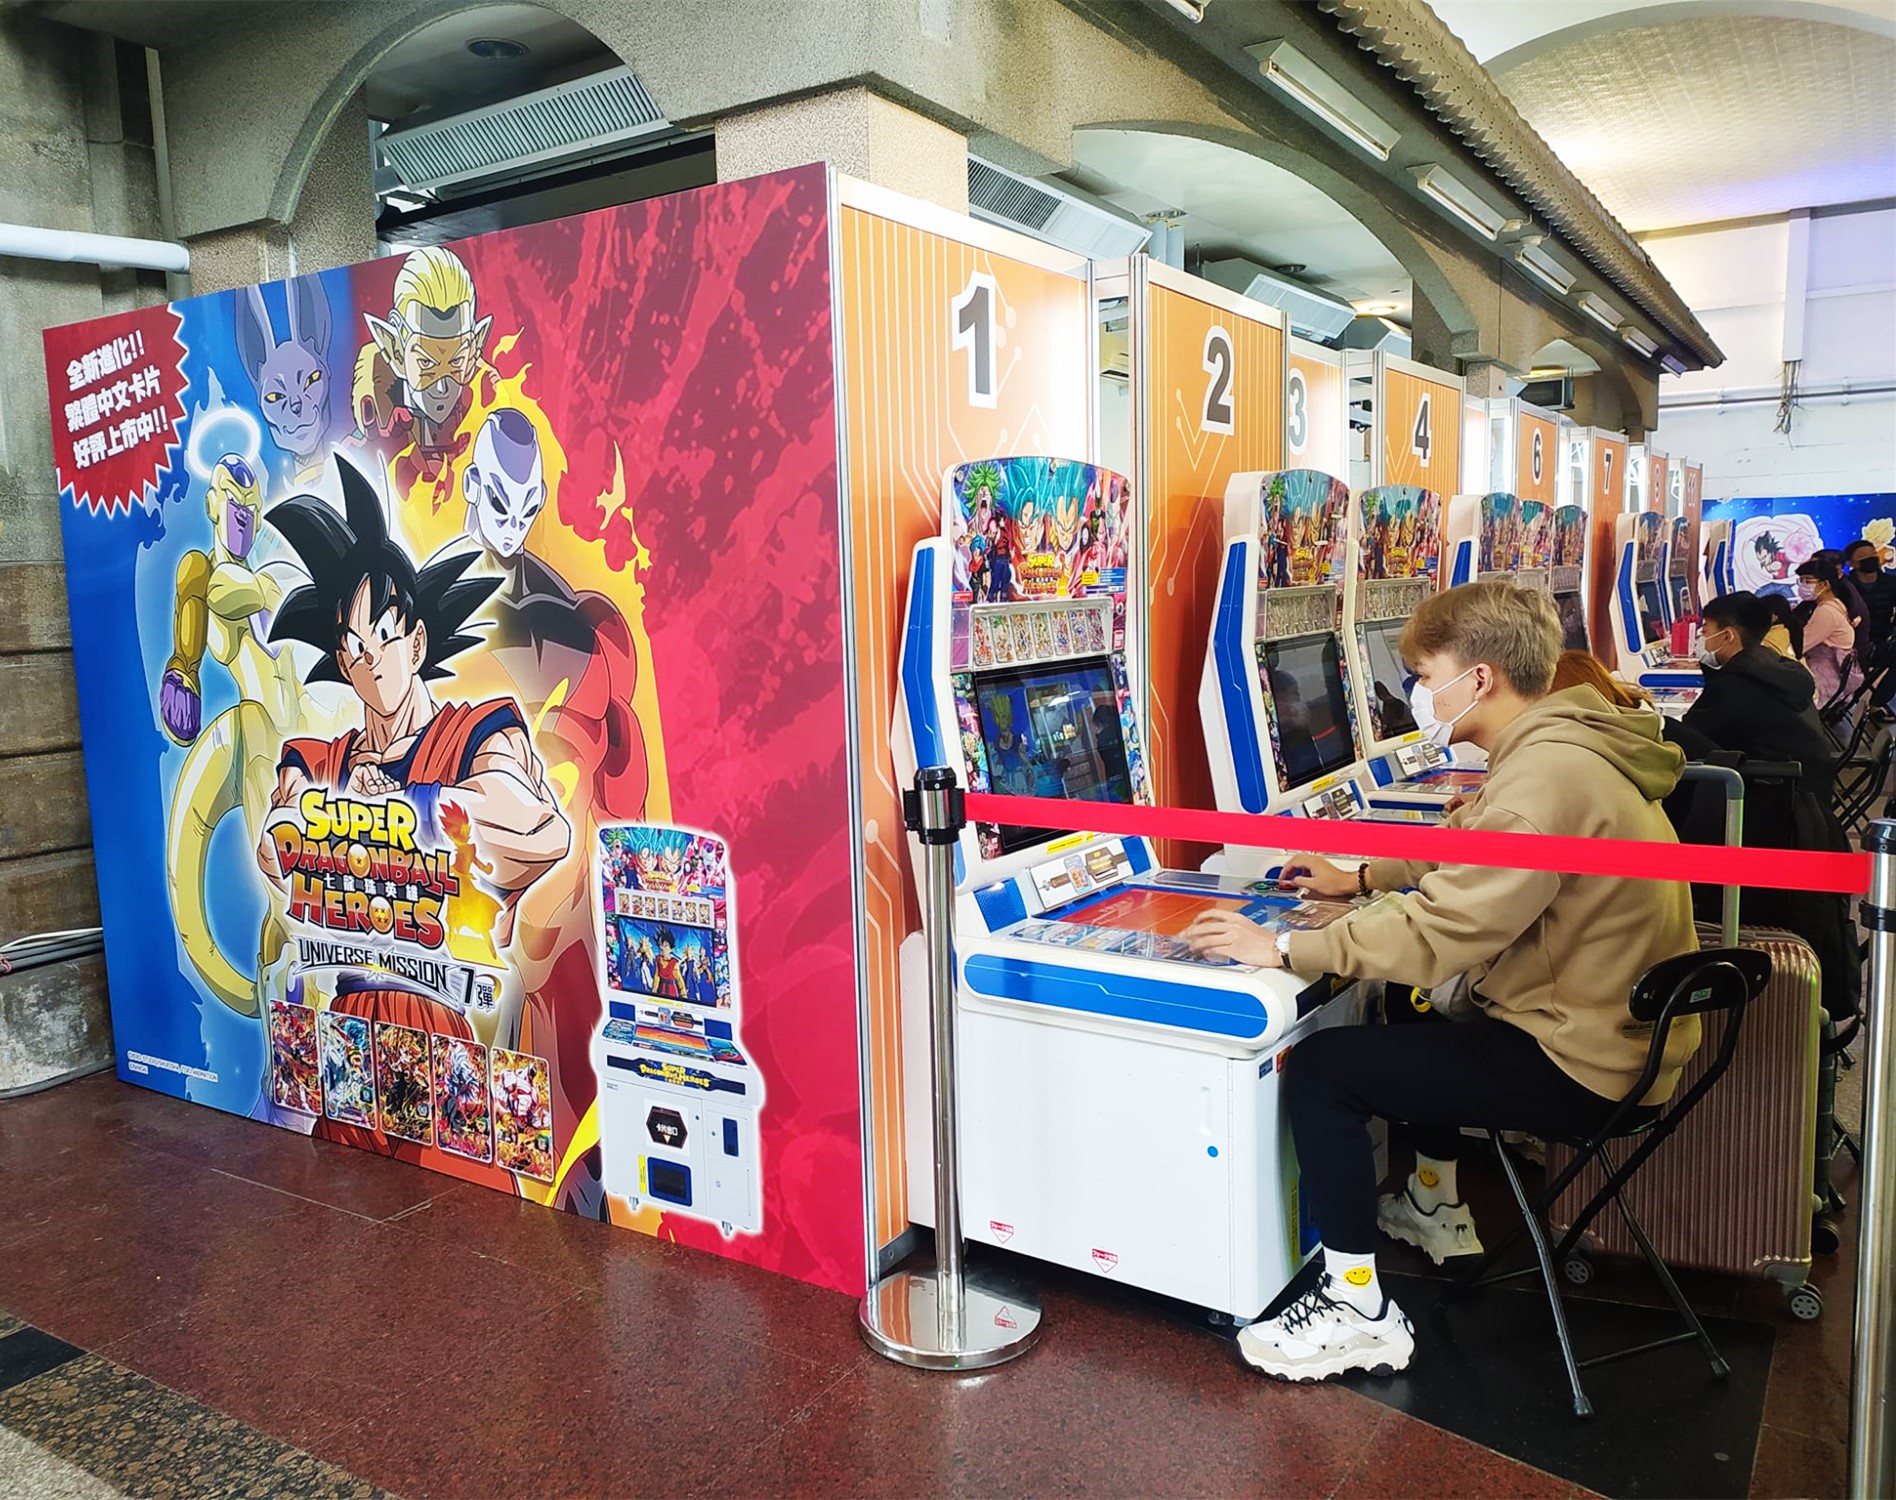 七龍珠英雄免費試玩快閃活動,就在舊台中火車站